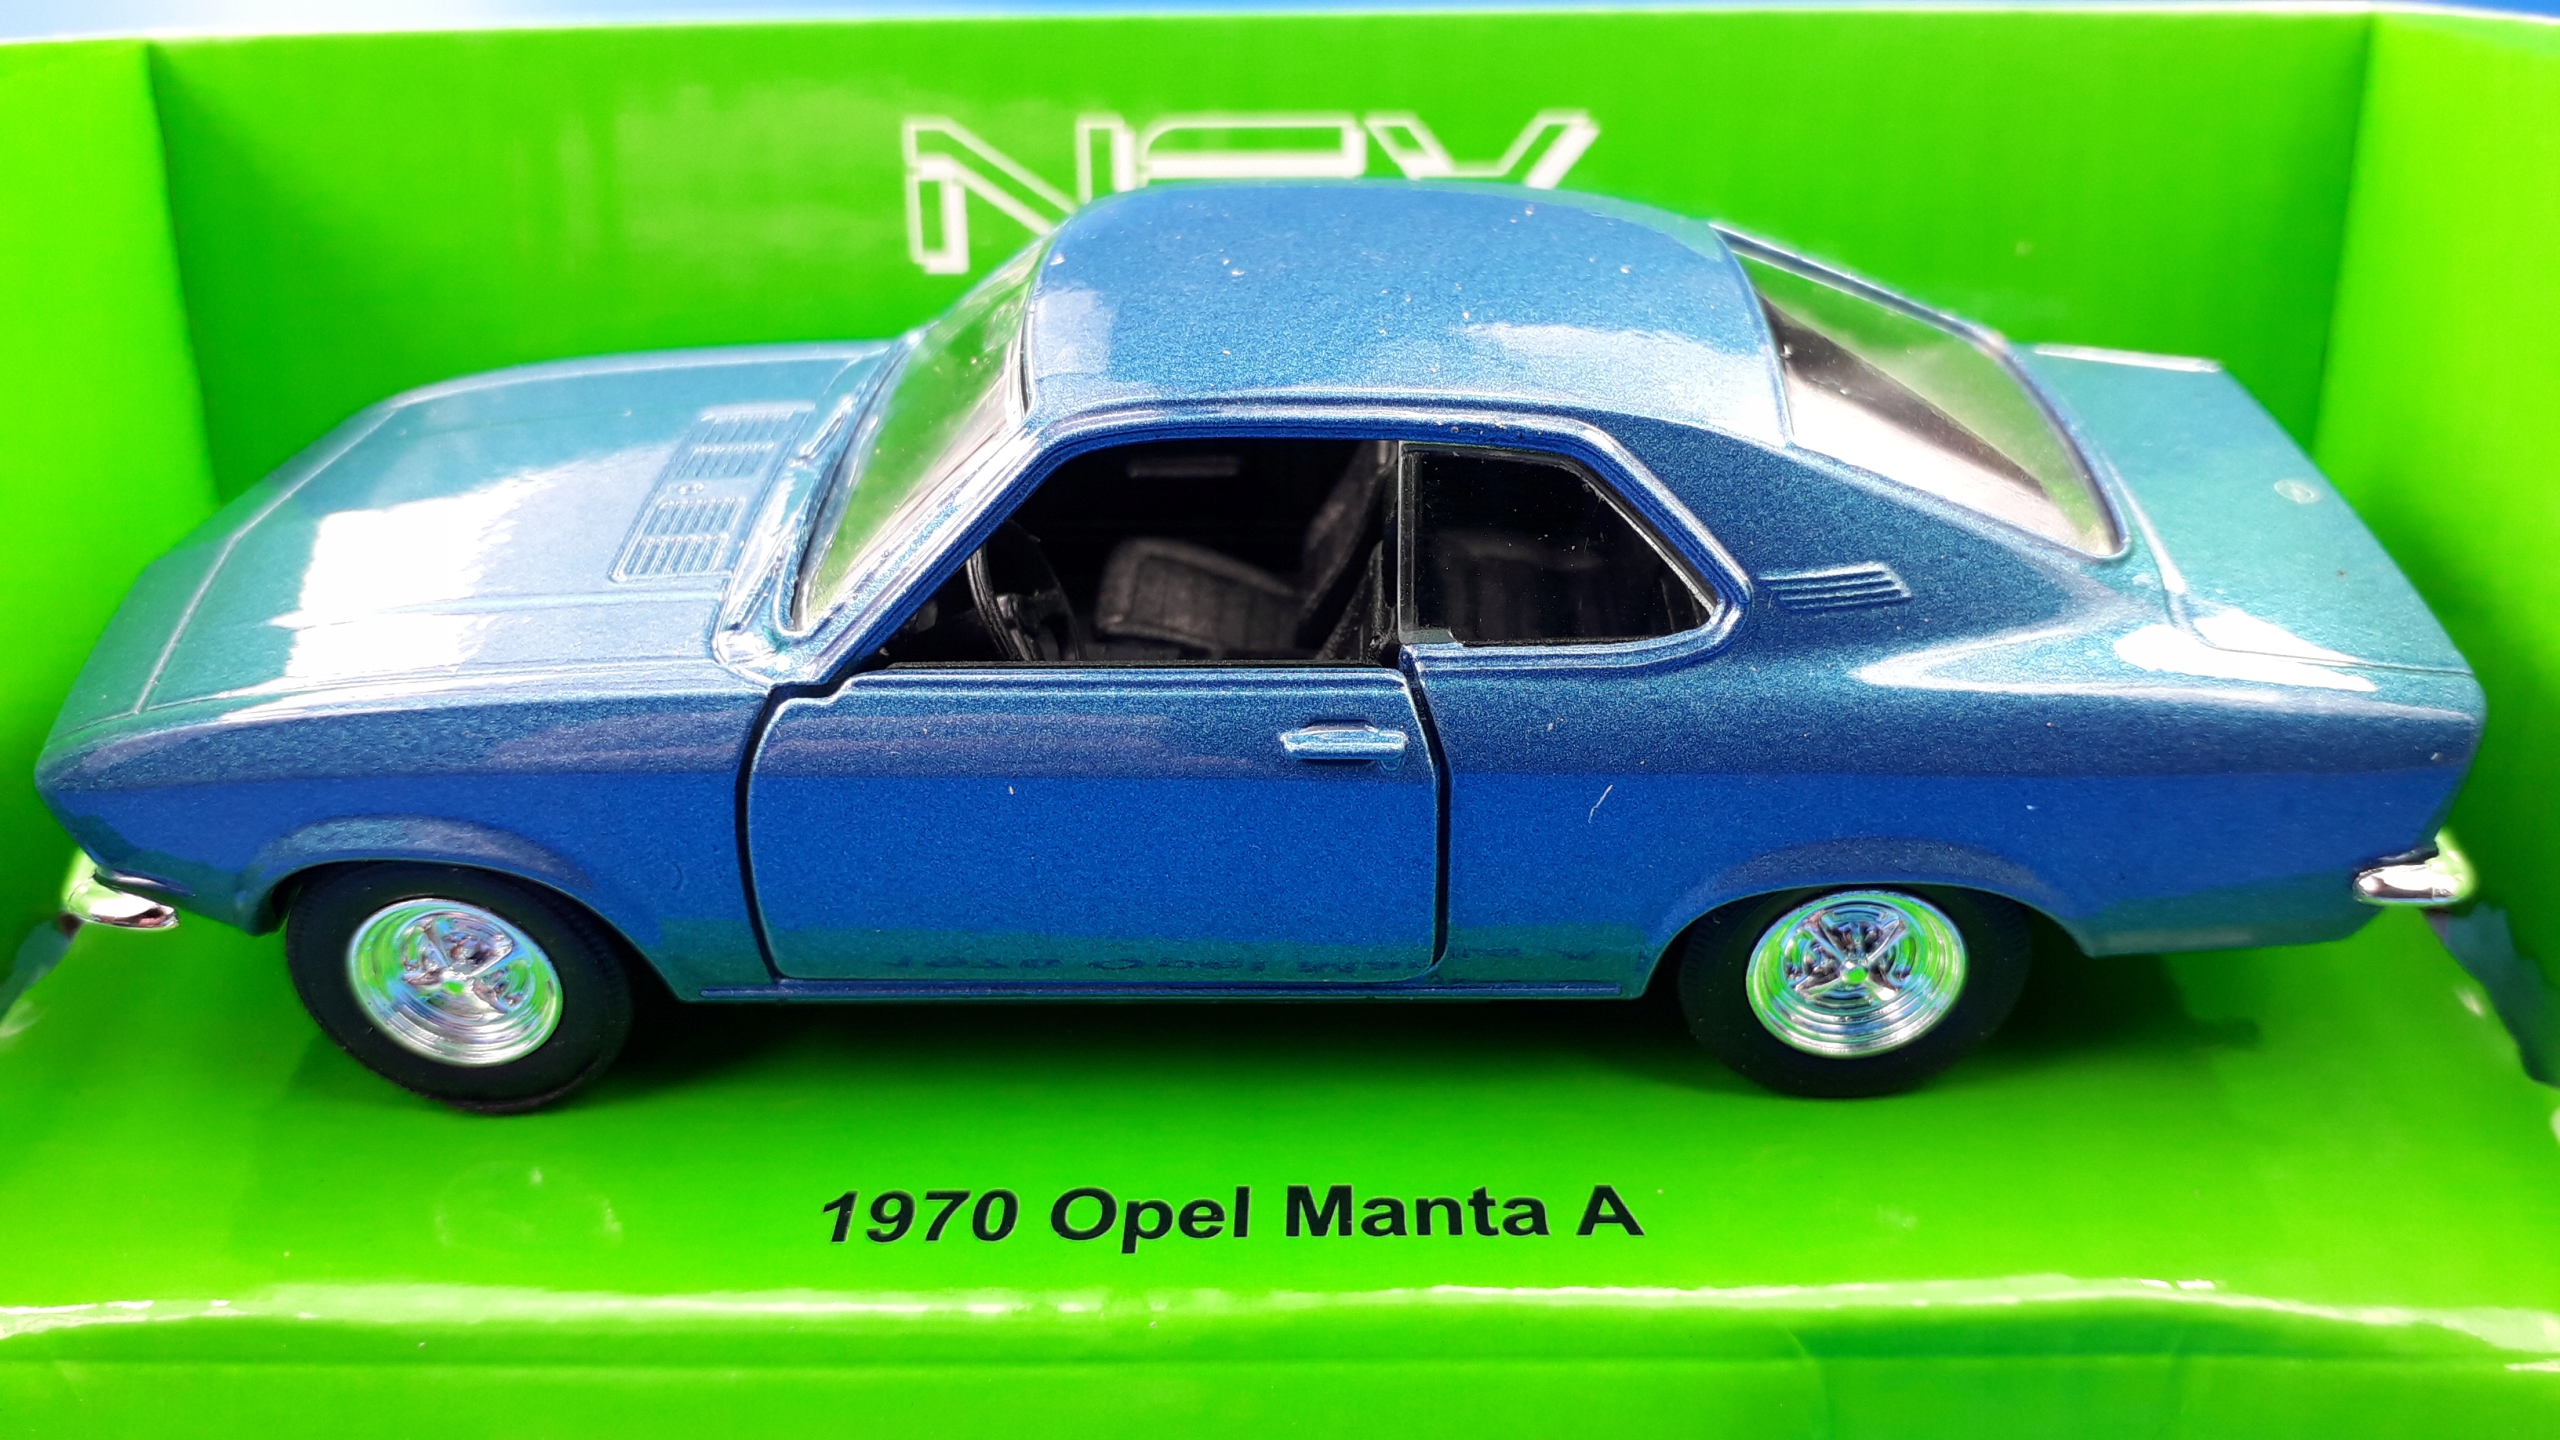 Opel Manta A 1970 1:34 -39 model Welly NEX metalowy 13193865911